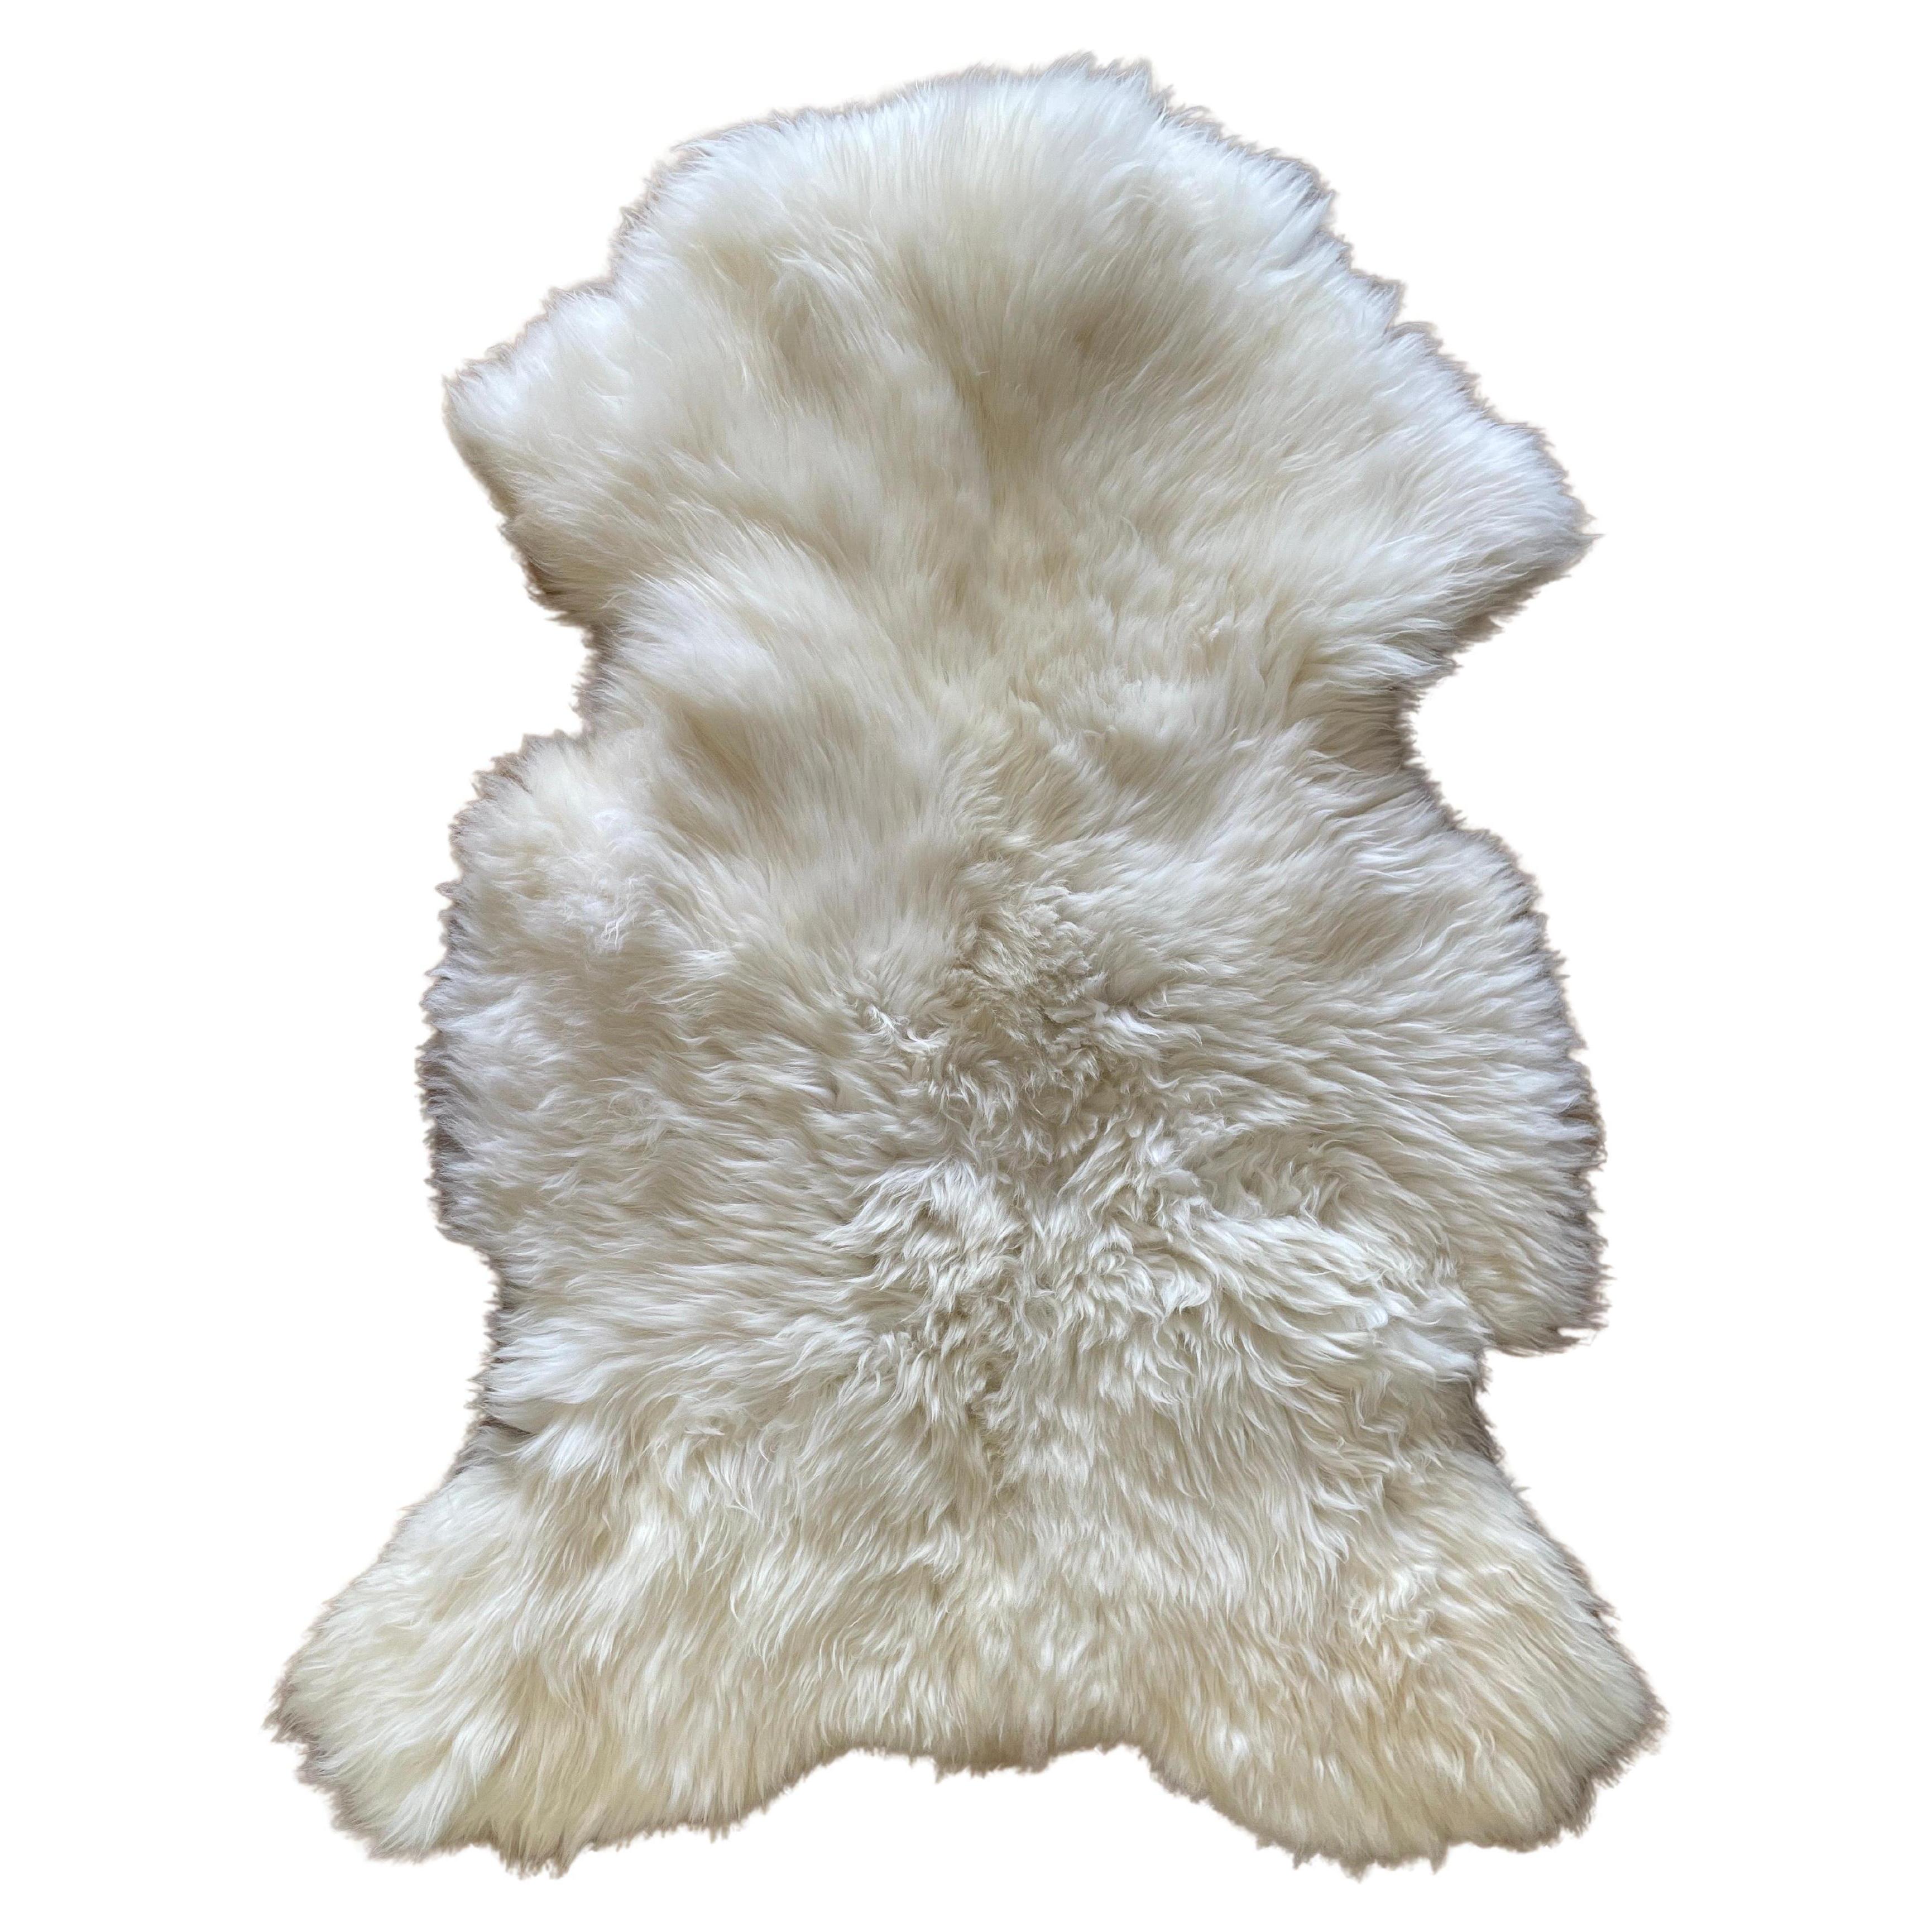 Weißes natürliches Schafsfell Teppich oder Überwurf